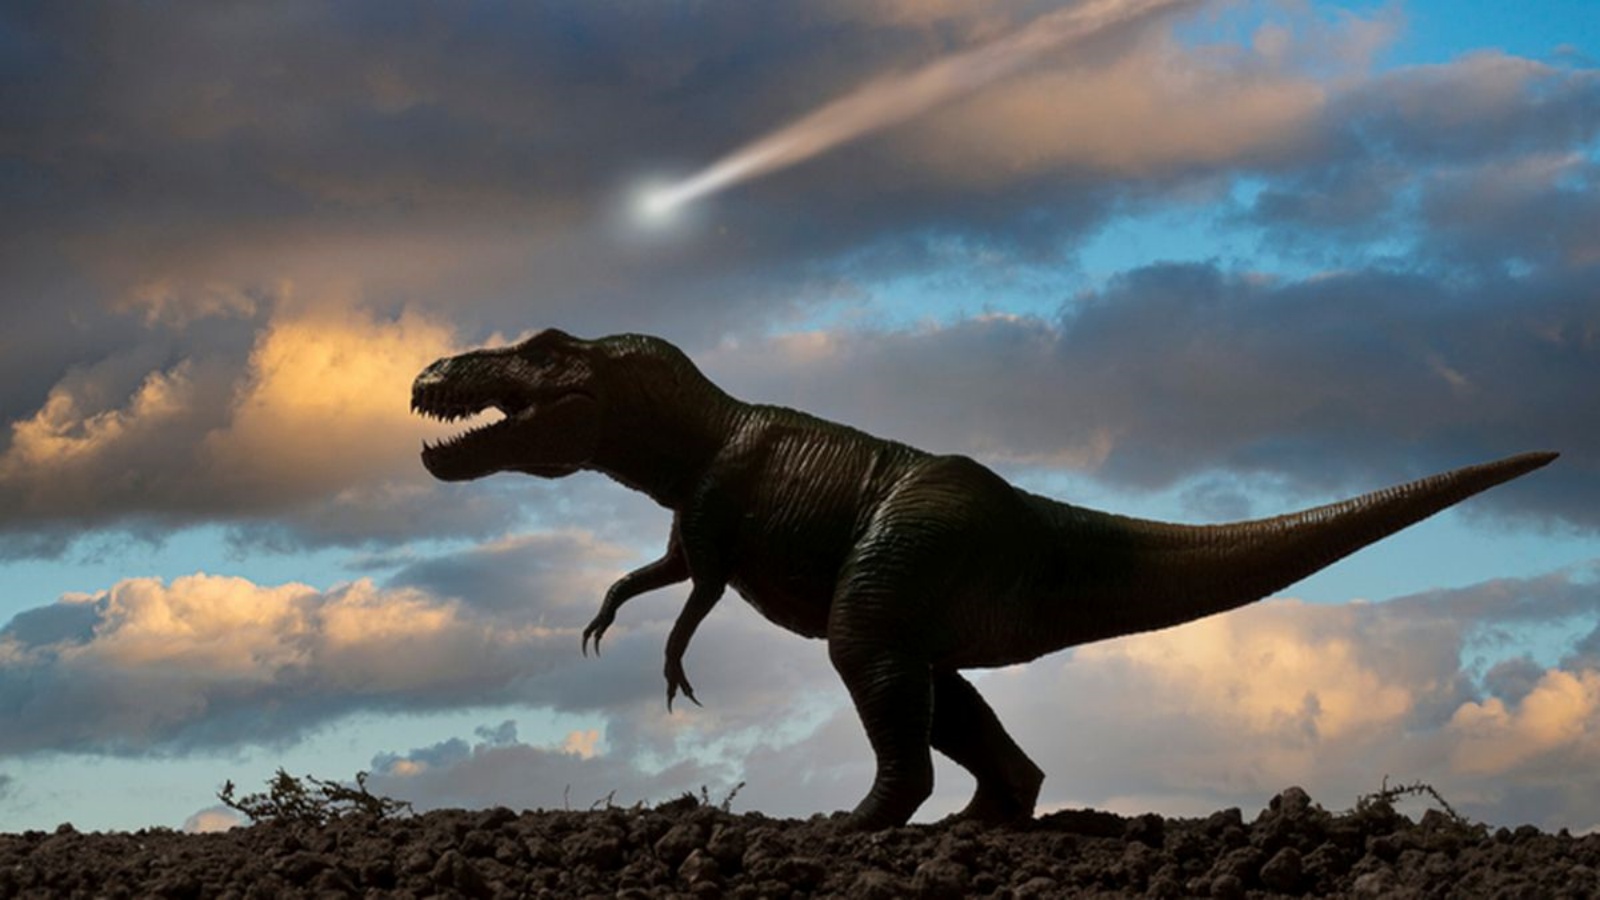 اكتشف باحثون في علم الحفريات، بقايا أربعة ديناصورات في منطقة ودي 